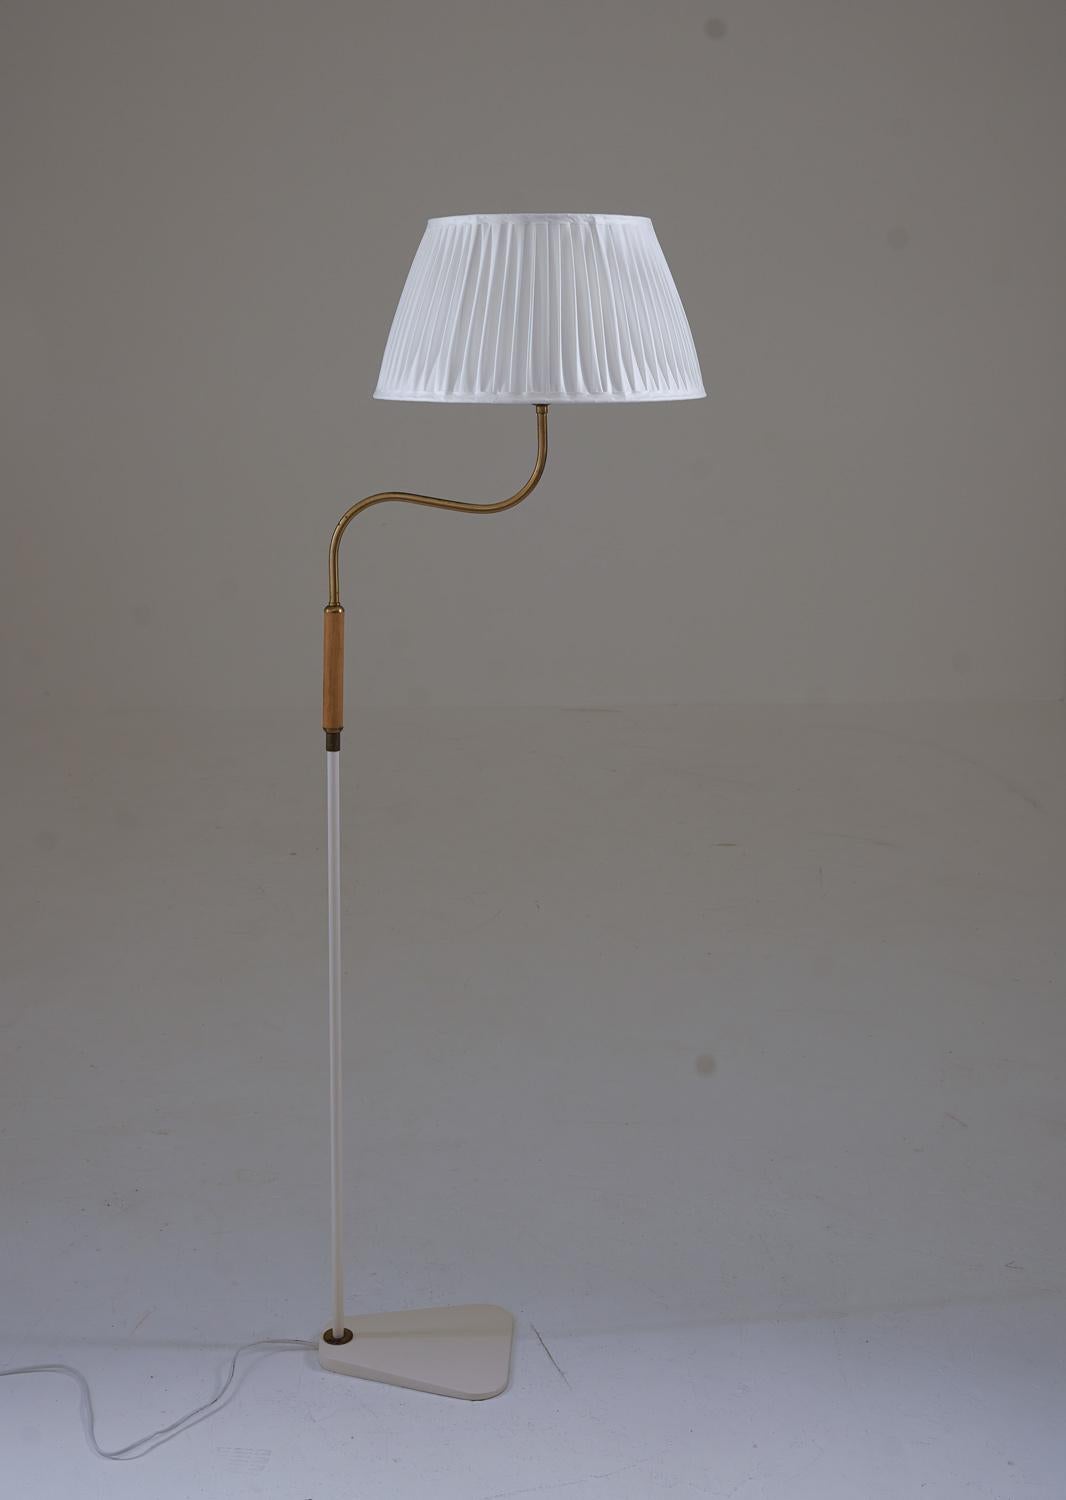 Lampadaire moderne suédois attribué à ASEA.
La lampe est en métal laqué, avec des détails en laiton et en teck.

Condit : La lampe a été re-laquée et est livrée avec un nouvel abat-jour plissé à la main.